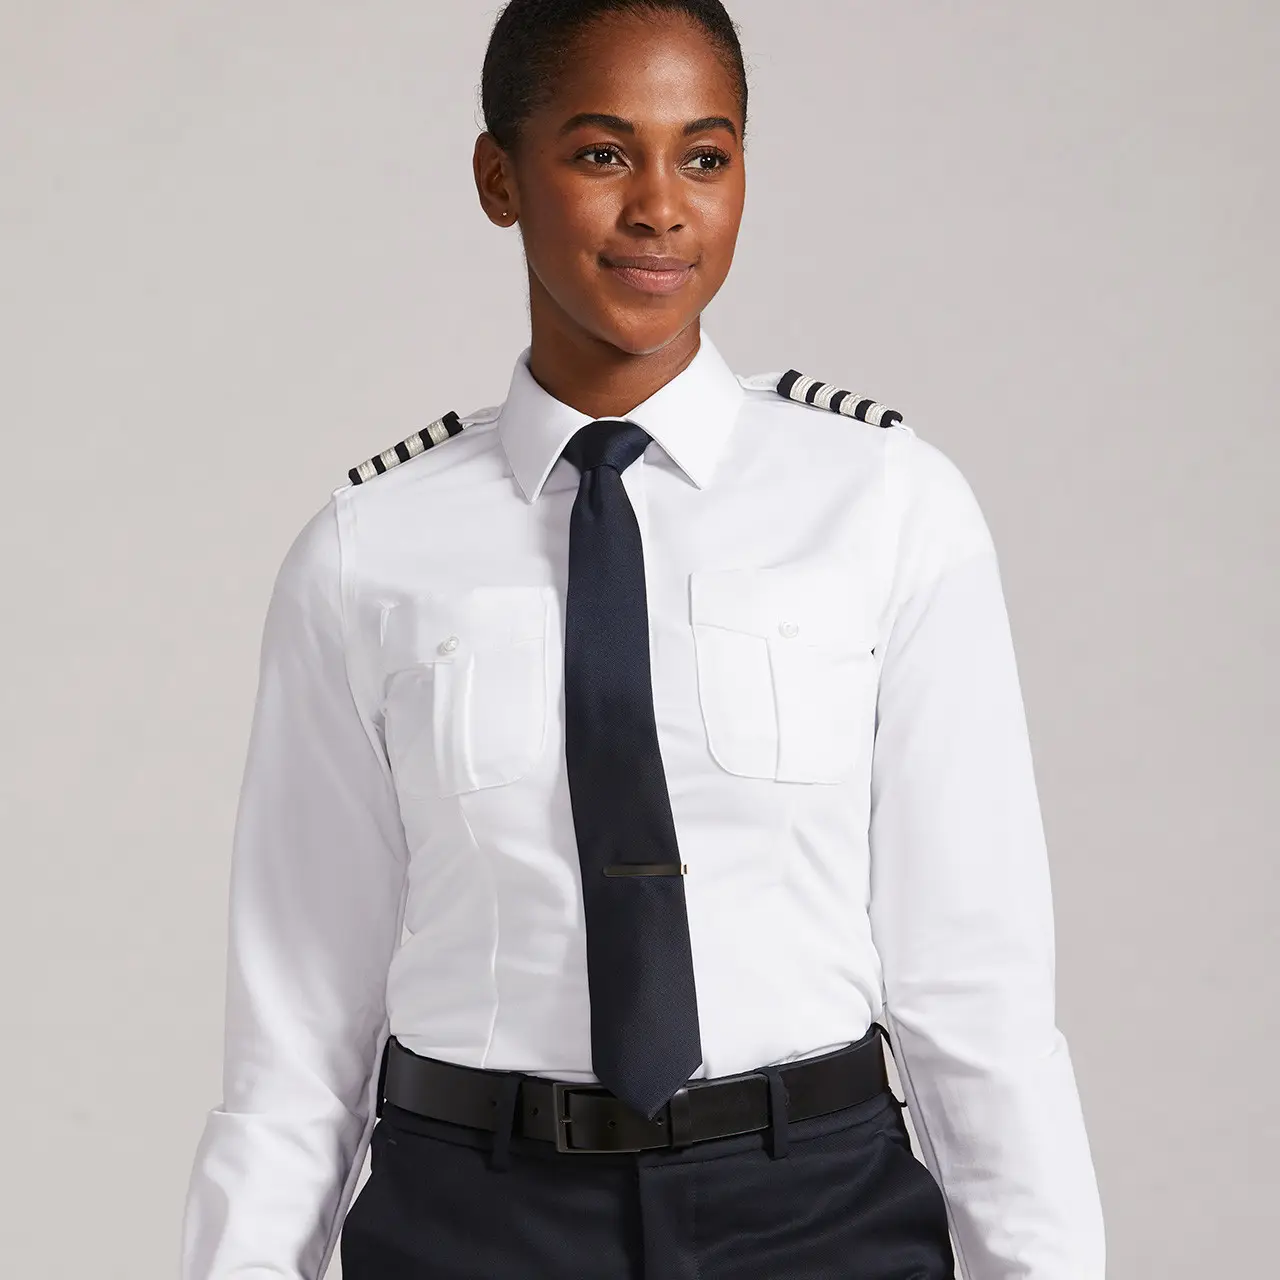 Camisa piloto uniforme de companhia aérea branca para mulheres, camisa piloto feminina de manga longa 65/35 em poliéster/algodão, fabricante de Bangladesh